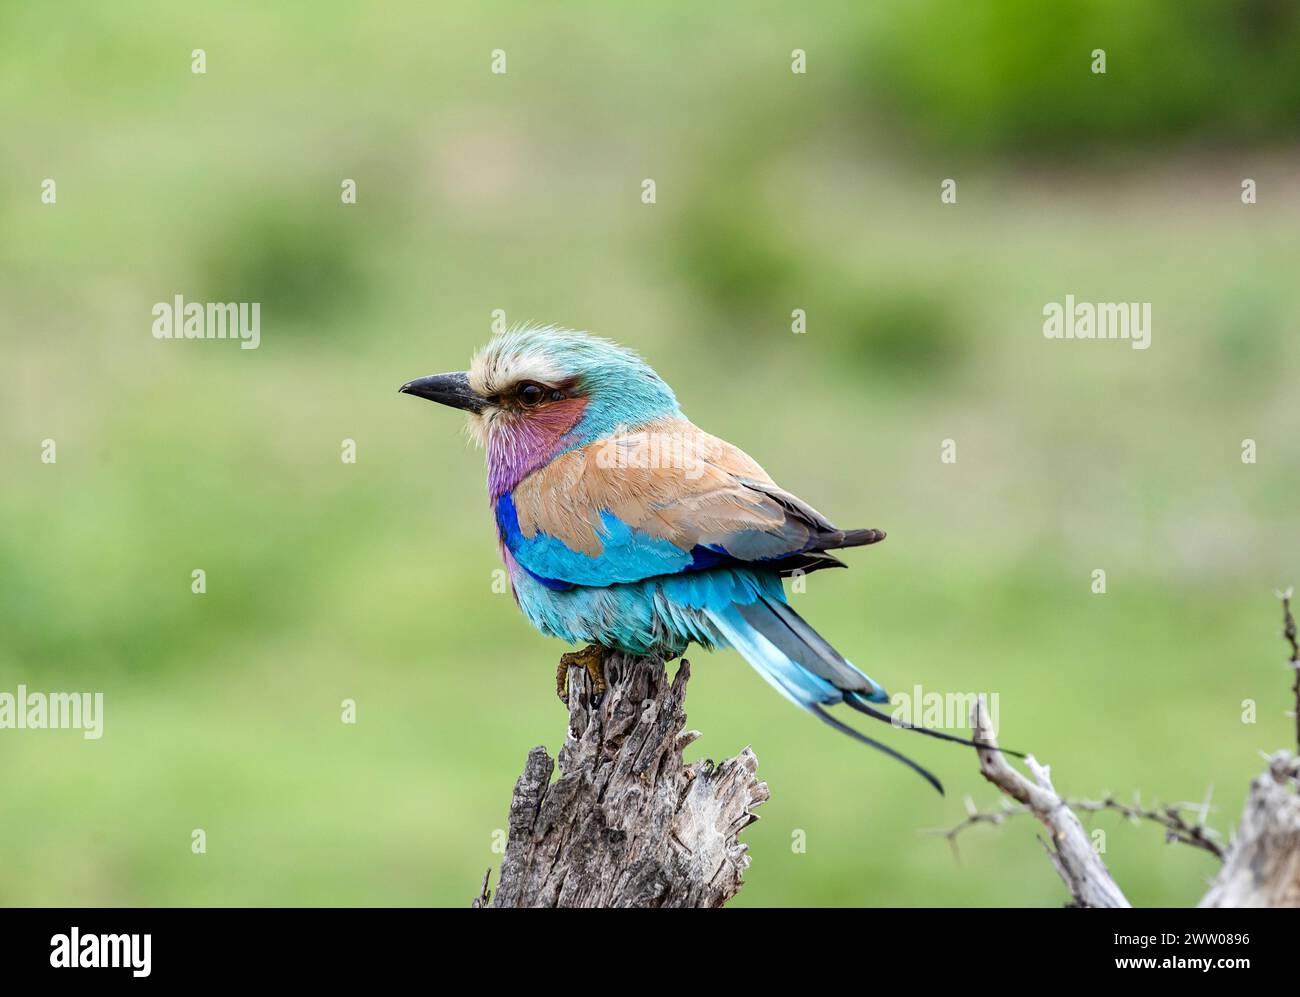 Rullo europeo colorato uccello su ramo asciutto, sfondo verde. Sudafrica, safari nel Kruger National Park. piccolo uccello di colore blu rosa arancione. Fauna selvatica Foto Stock